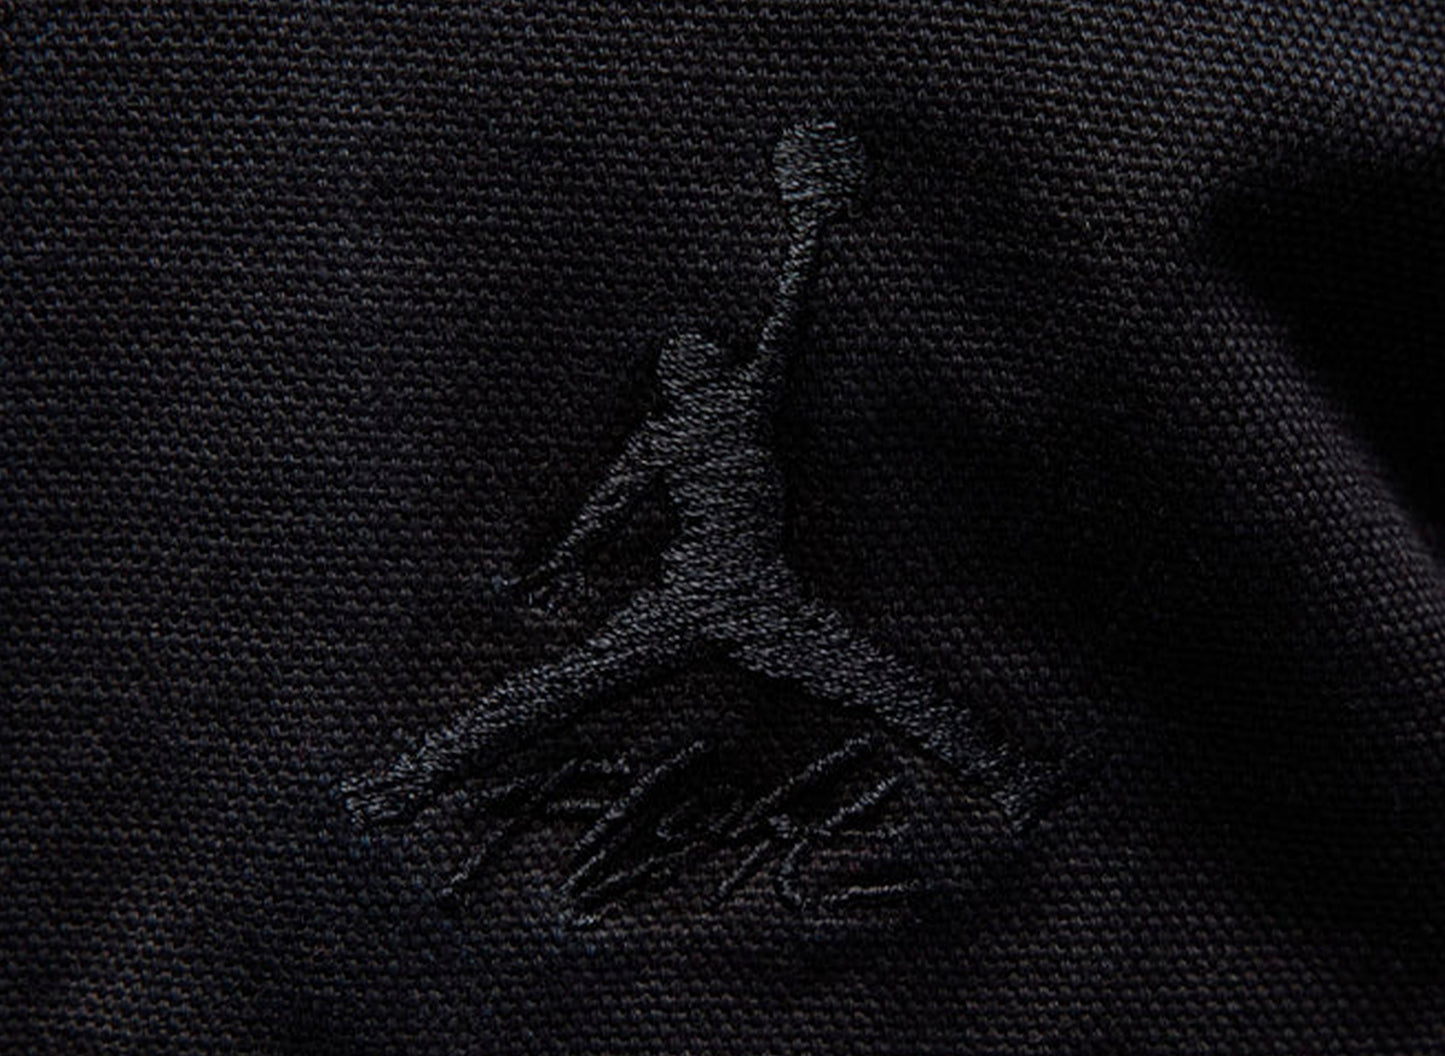 Jordan Essentials Statement Chicago Jacket in Black xld